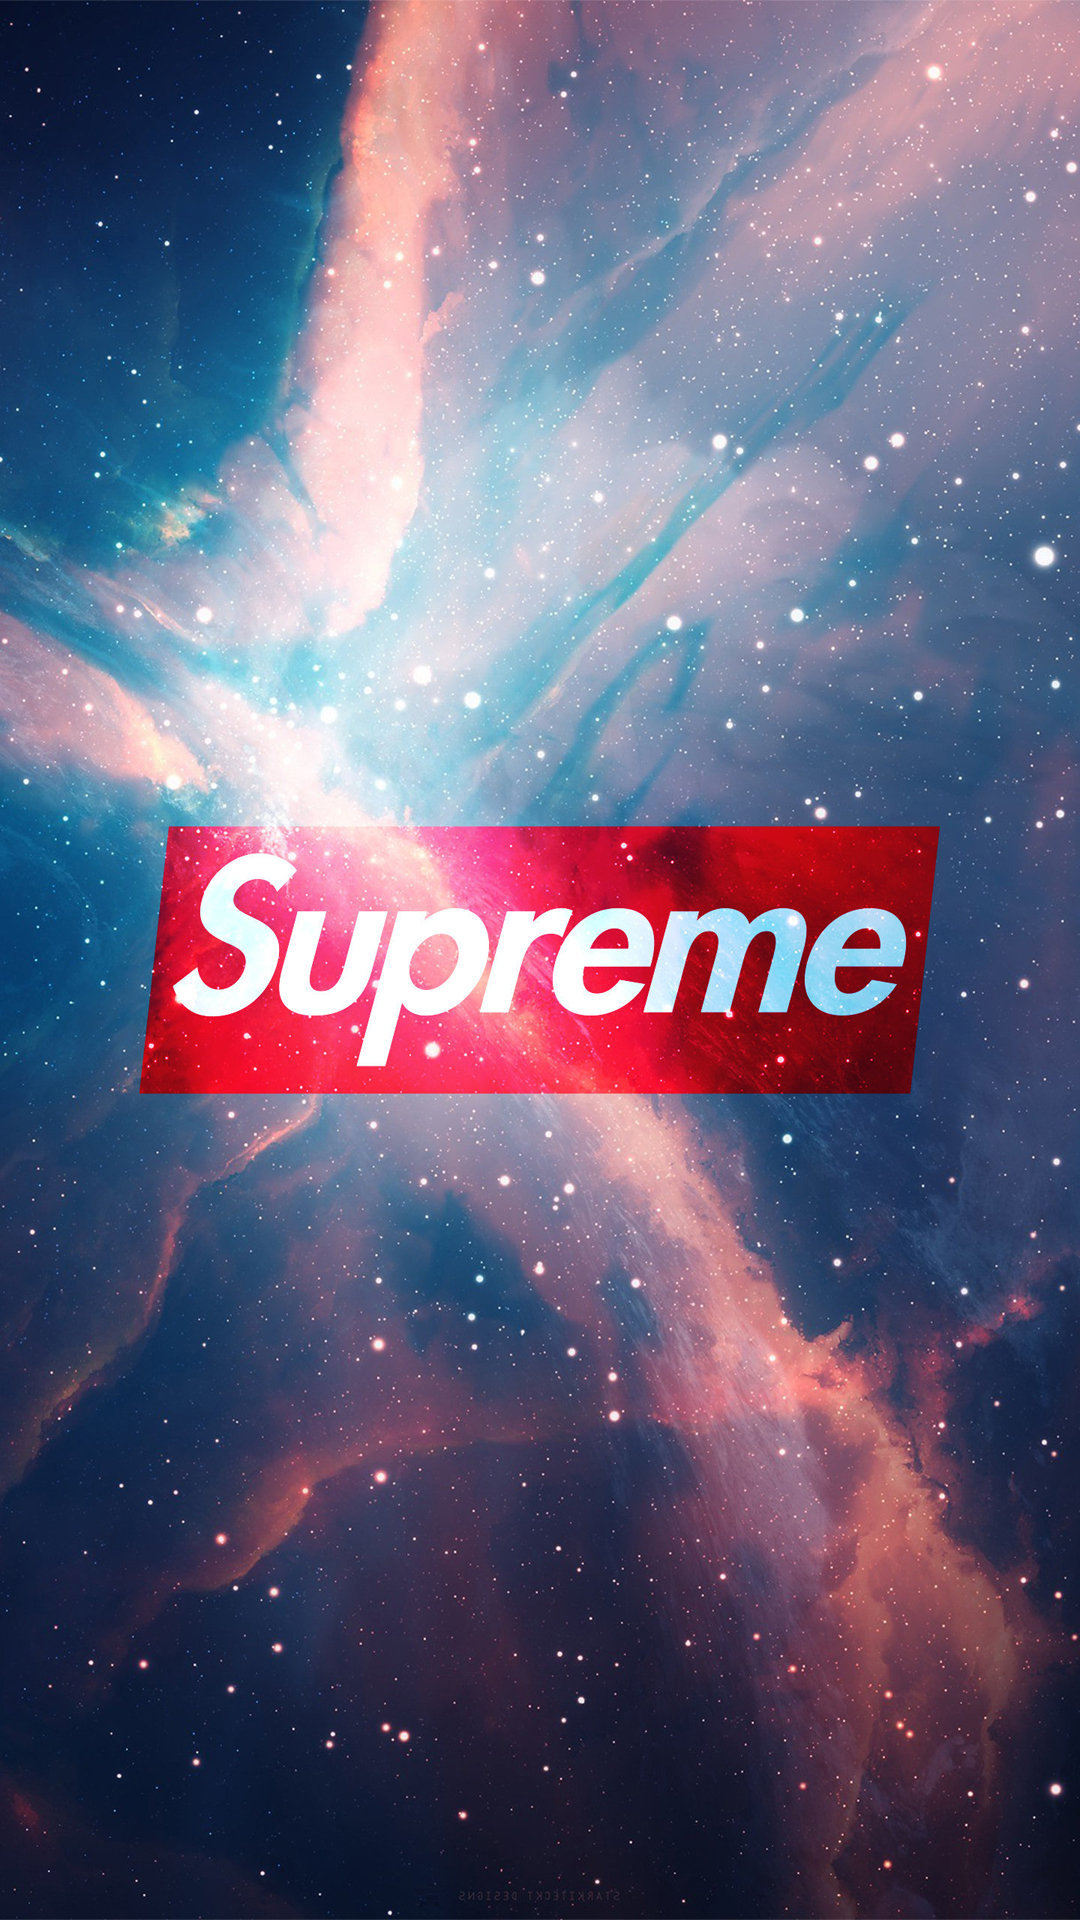 Supreme Universe